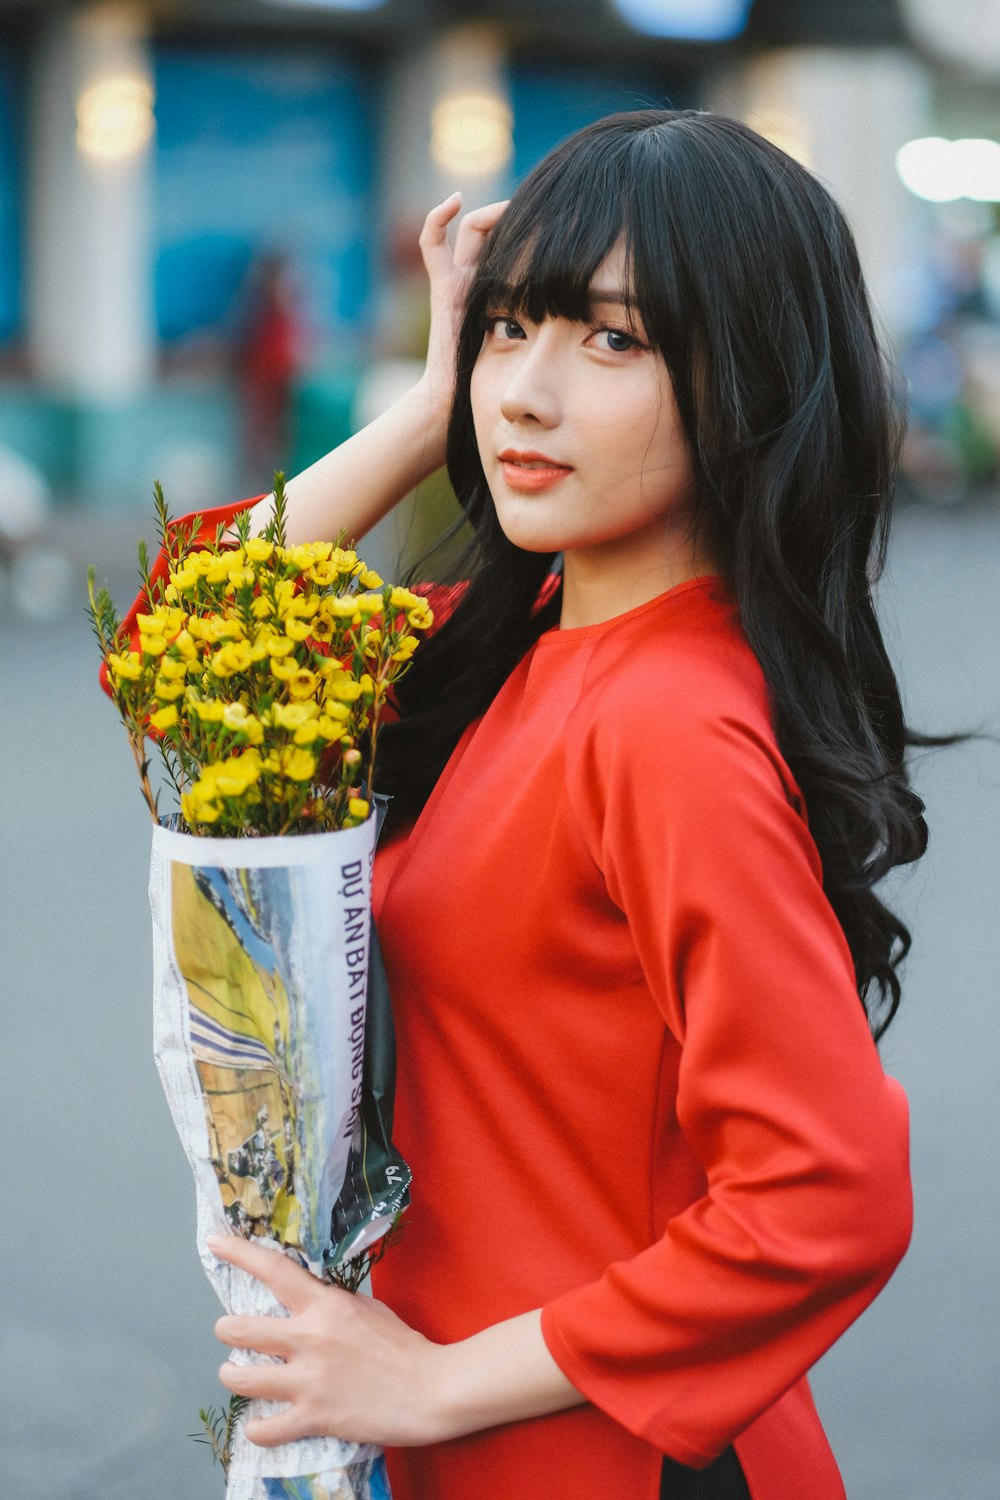 Una mujer con un vestido rojo sosteniendo un ramo de flores